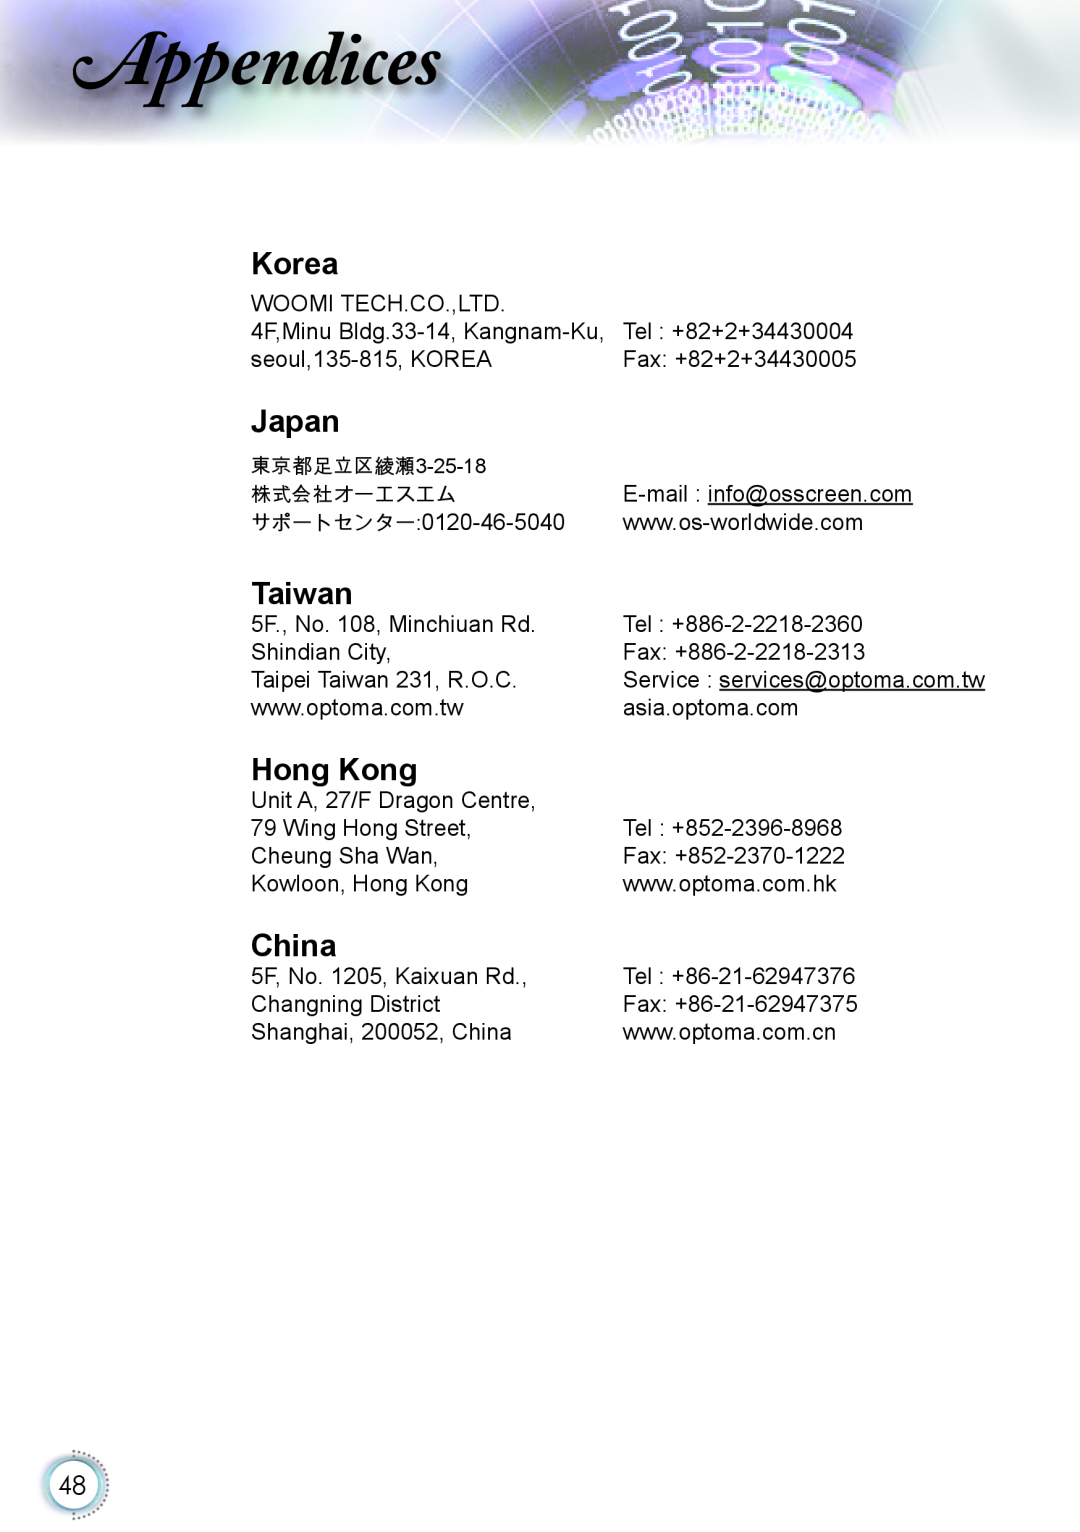 Optoma Technology HD20 manual Korea, Japan, Taiwan, Hong Kong, China, ppendices 